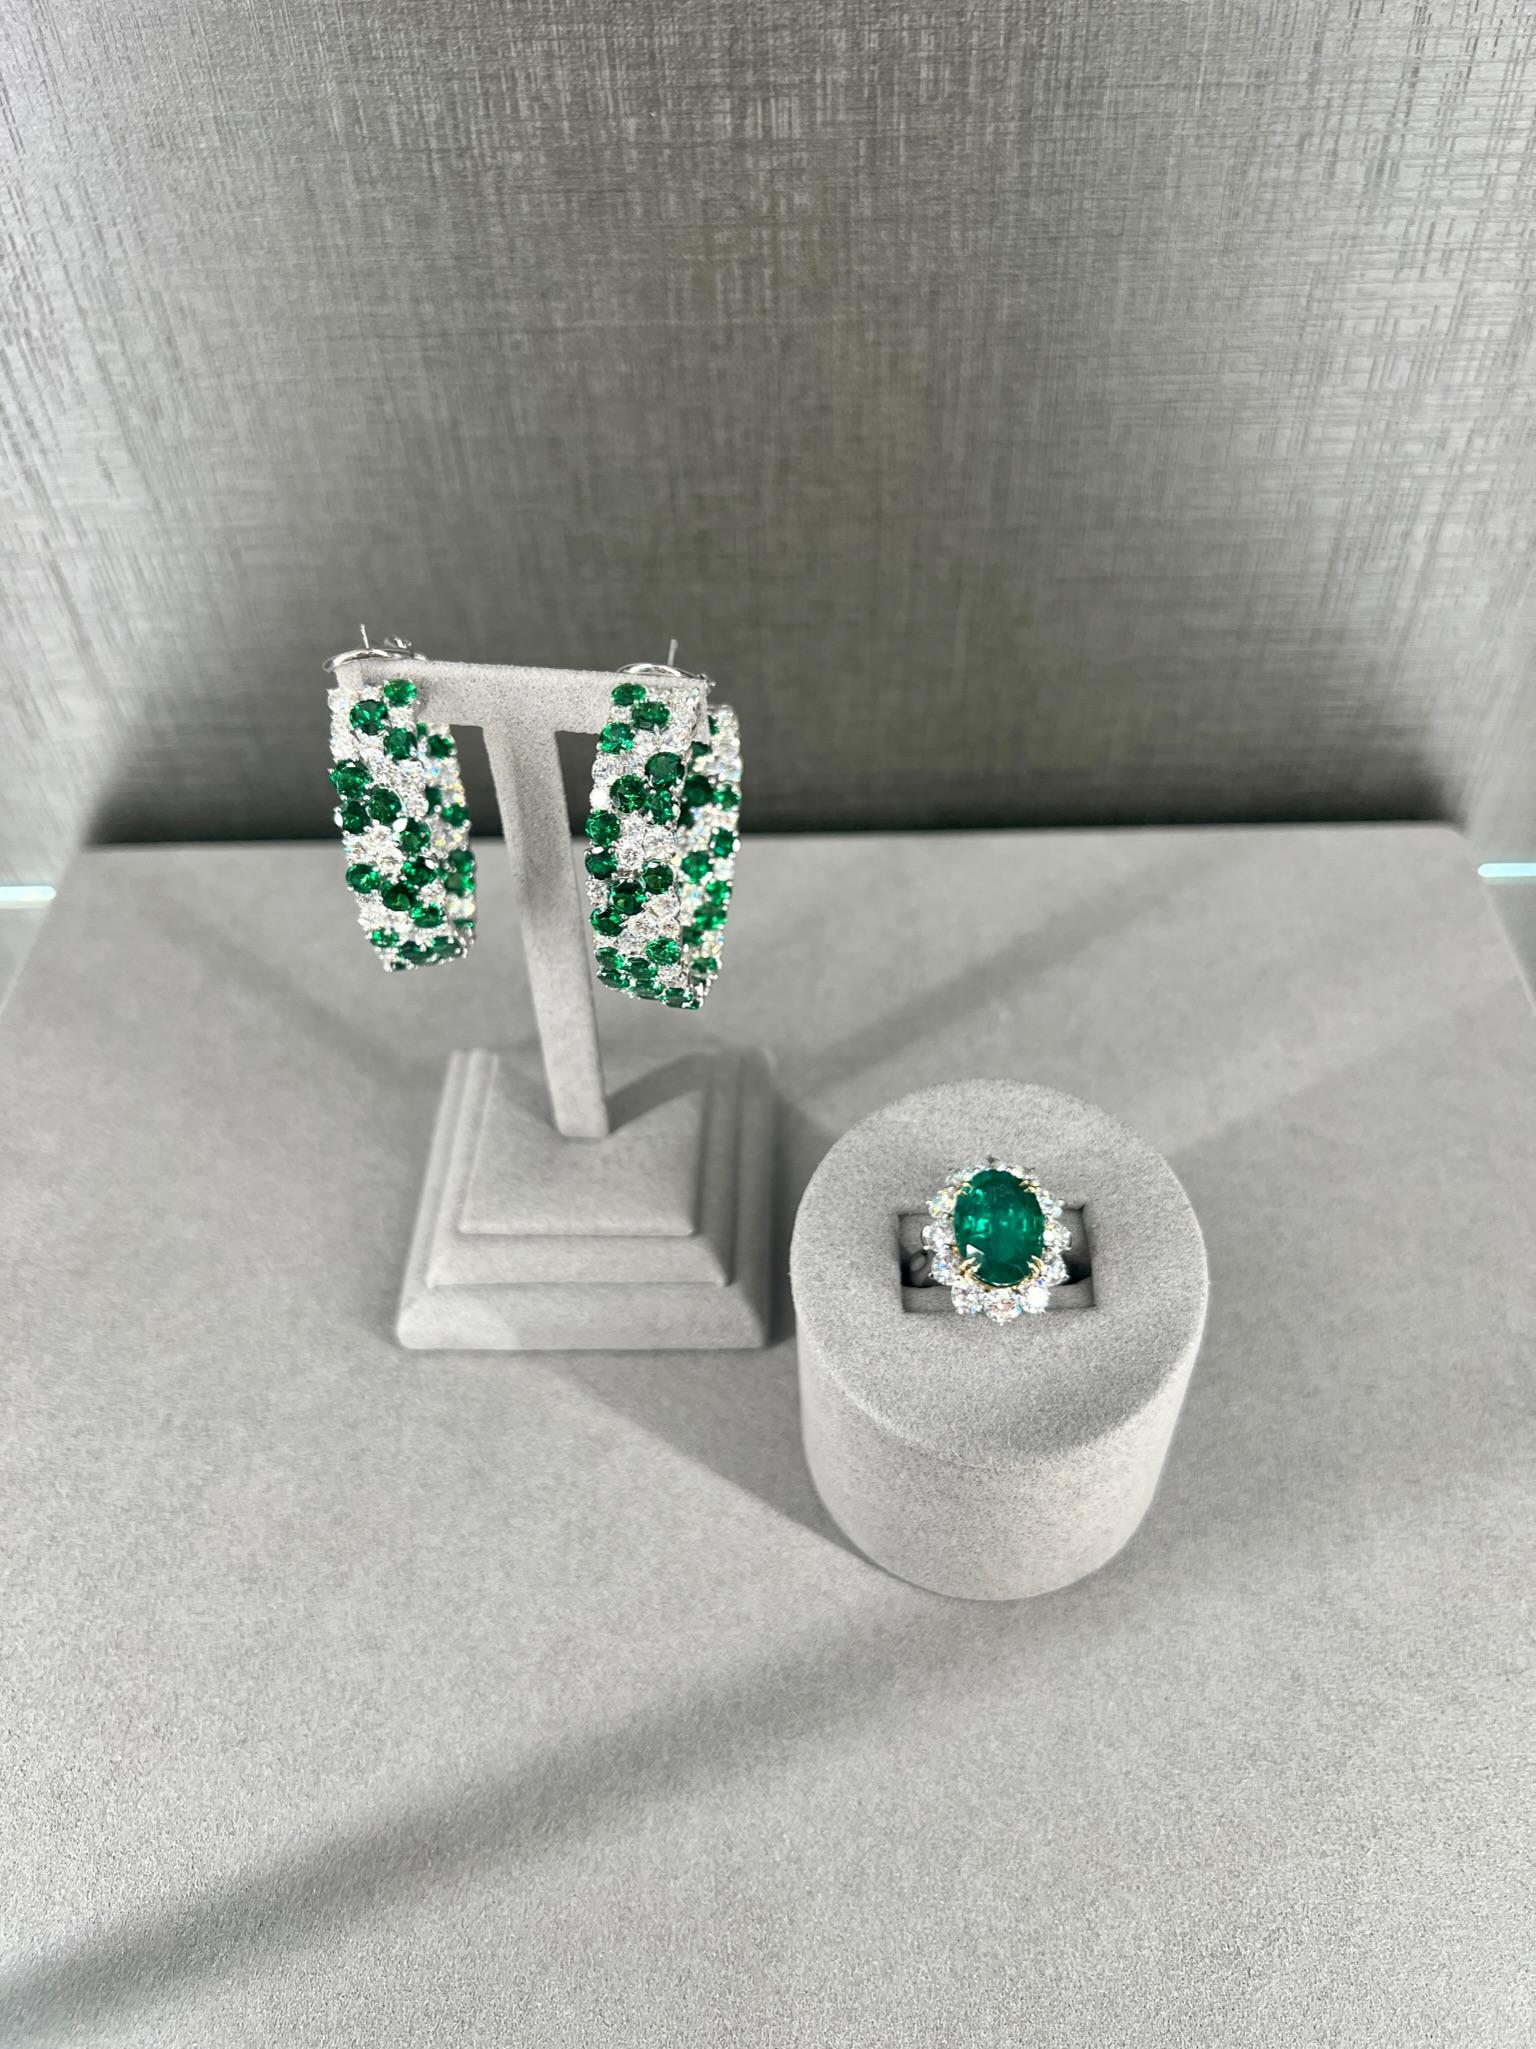 Tsavorit- und Diamantohrringe sind ein wunderschönes und einzigartiges Modell, das jedem Outfit einen Hauch von Farbe und Glanz verleihen kann. Der Tsavorit ist eine Granatart, die für ihre leuchtend grüne Farbe bekannt ist und in Kombination mit